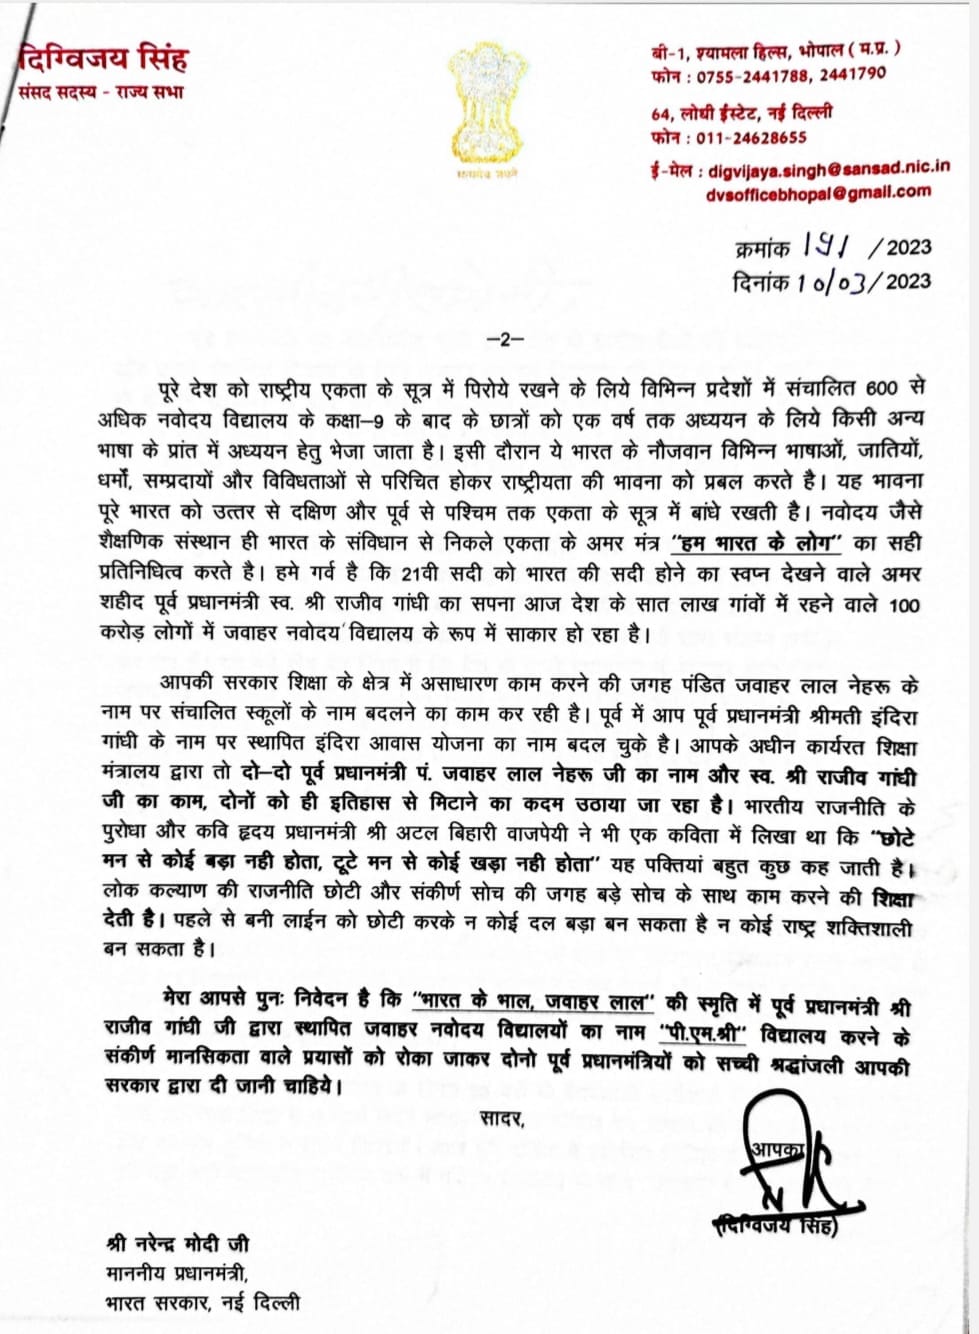 दिग्विजय सिंह ने पीएम नरेंद्र मोदी को लिखा पत्र, जवाहर नवोदय विद्यालय को लेकर की ये मांग